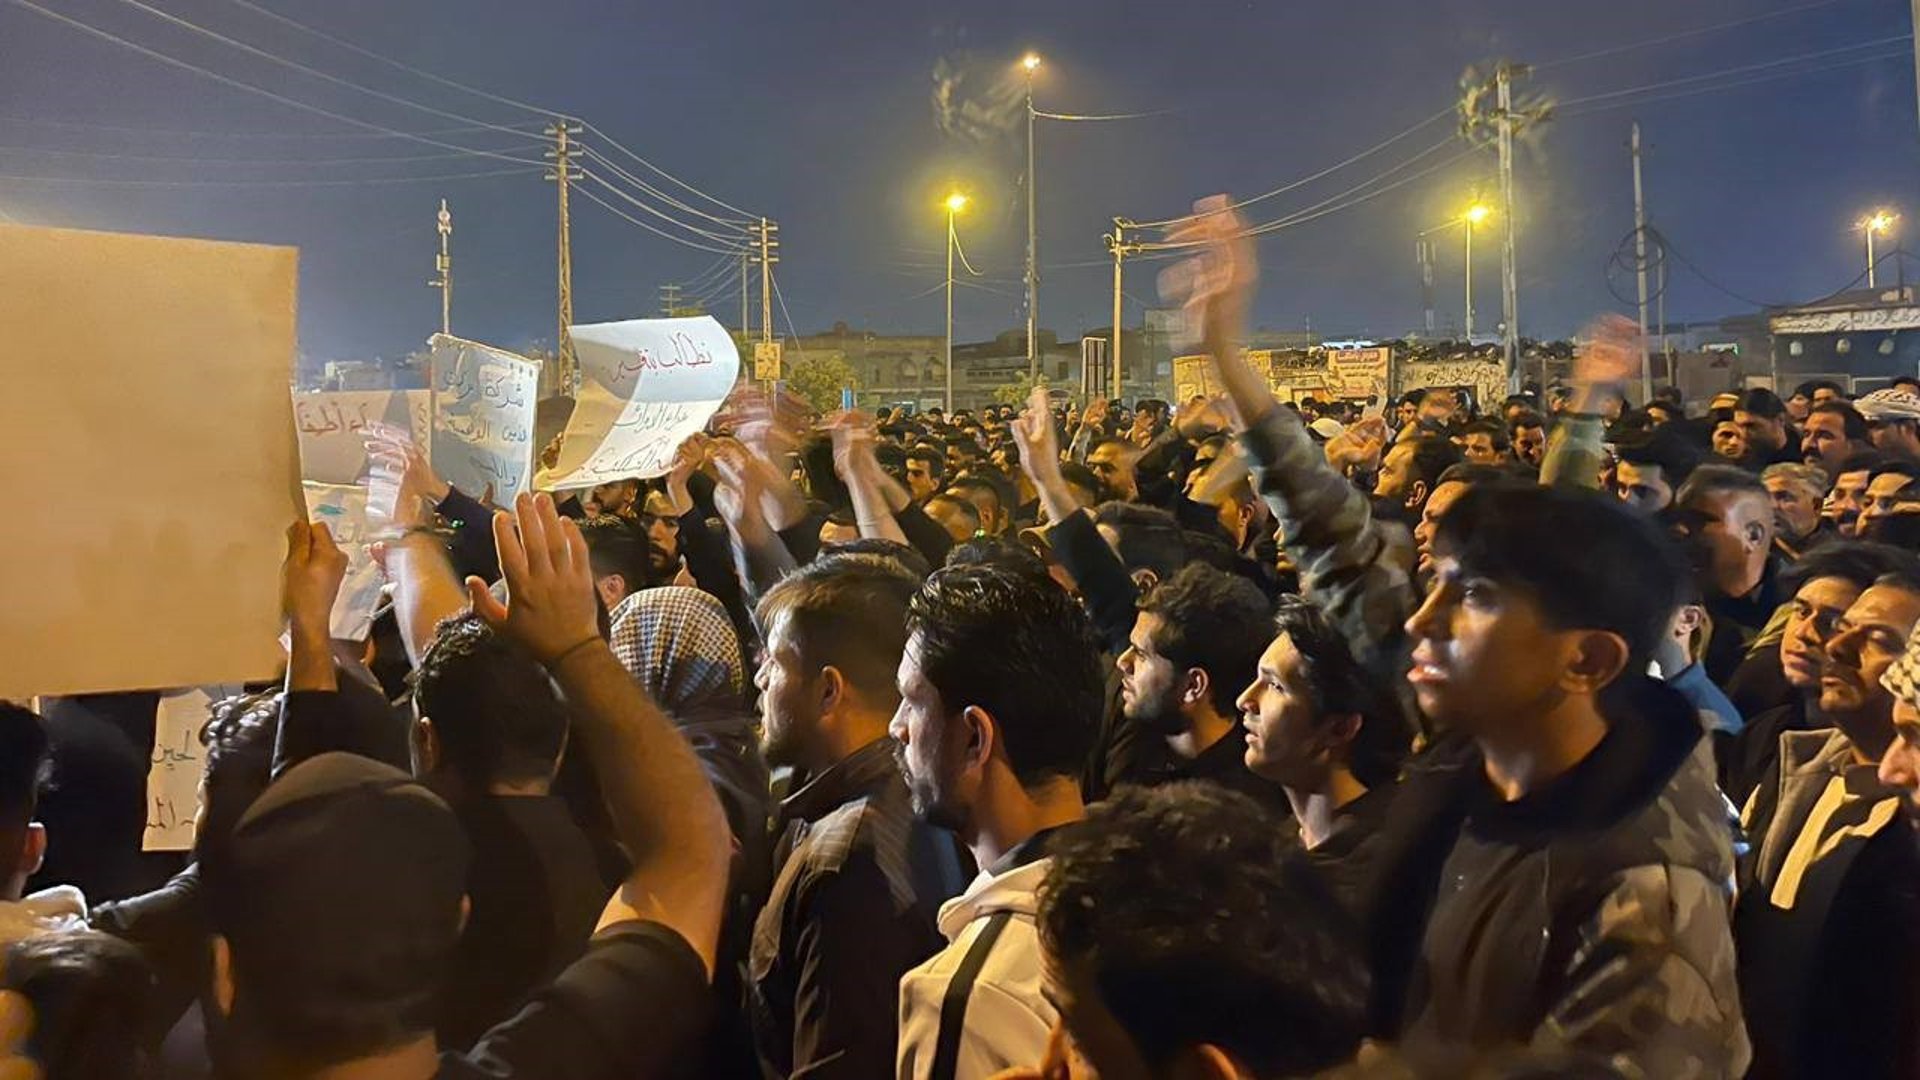 فيديو: تظاهرة ليلية في القرنة احتجاجاً على تلكؤ مشروع المجاري